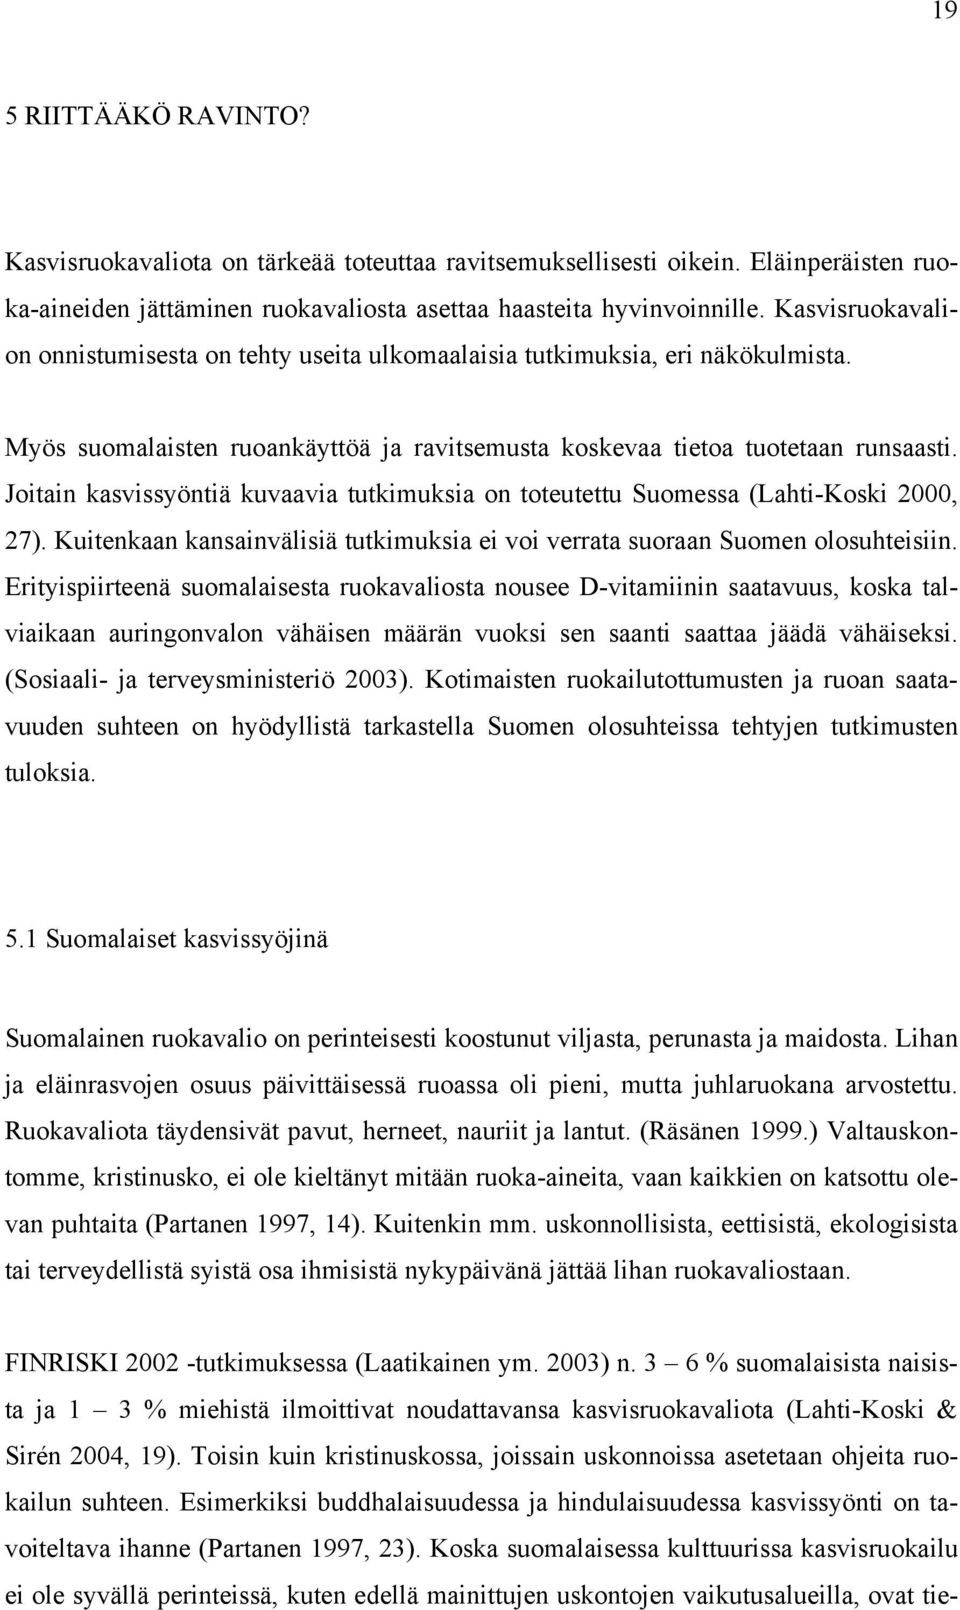 Joitain kasvissyöntiä kuvaavia tutkimuksia on toteutettu Suomessa (Lahti-Koski 2000, 27). Kuitenkaan kansainvälisiä tutkimuksia ei voi verrata suoraan Suomen olosuhteisiin.